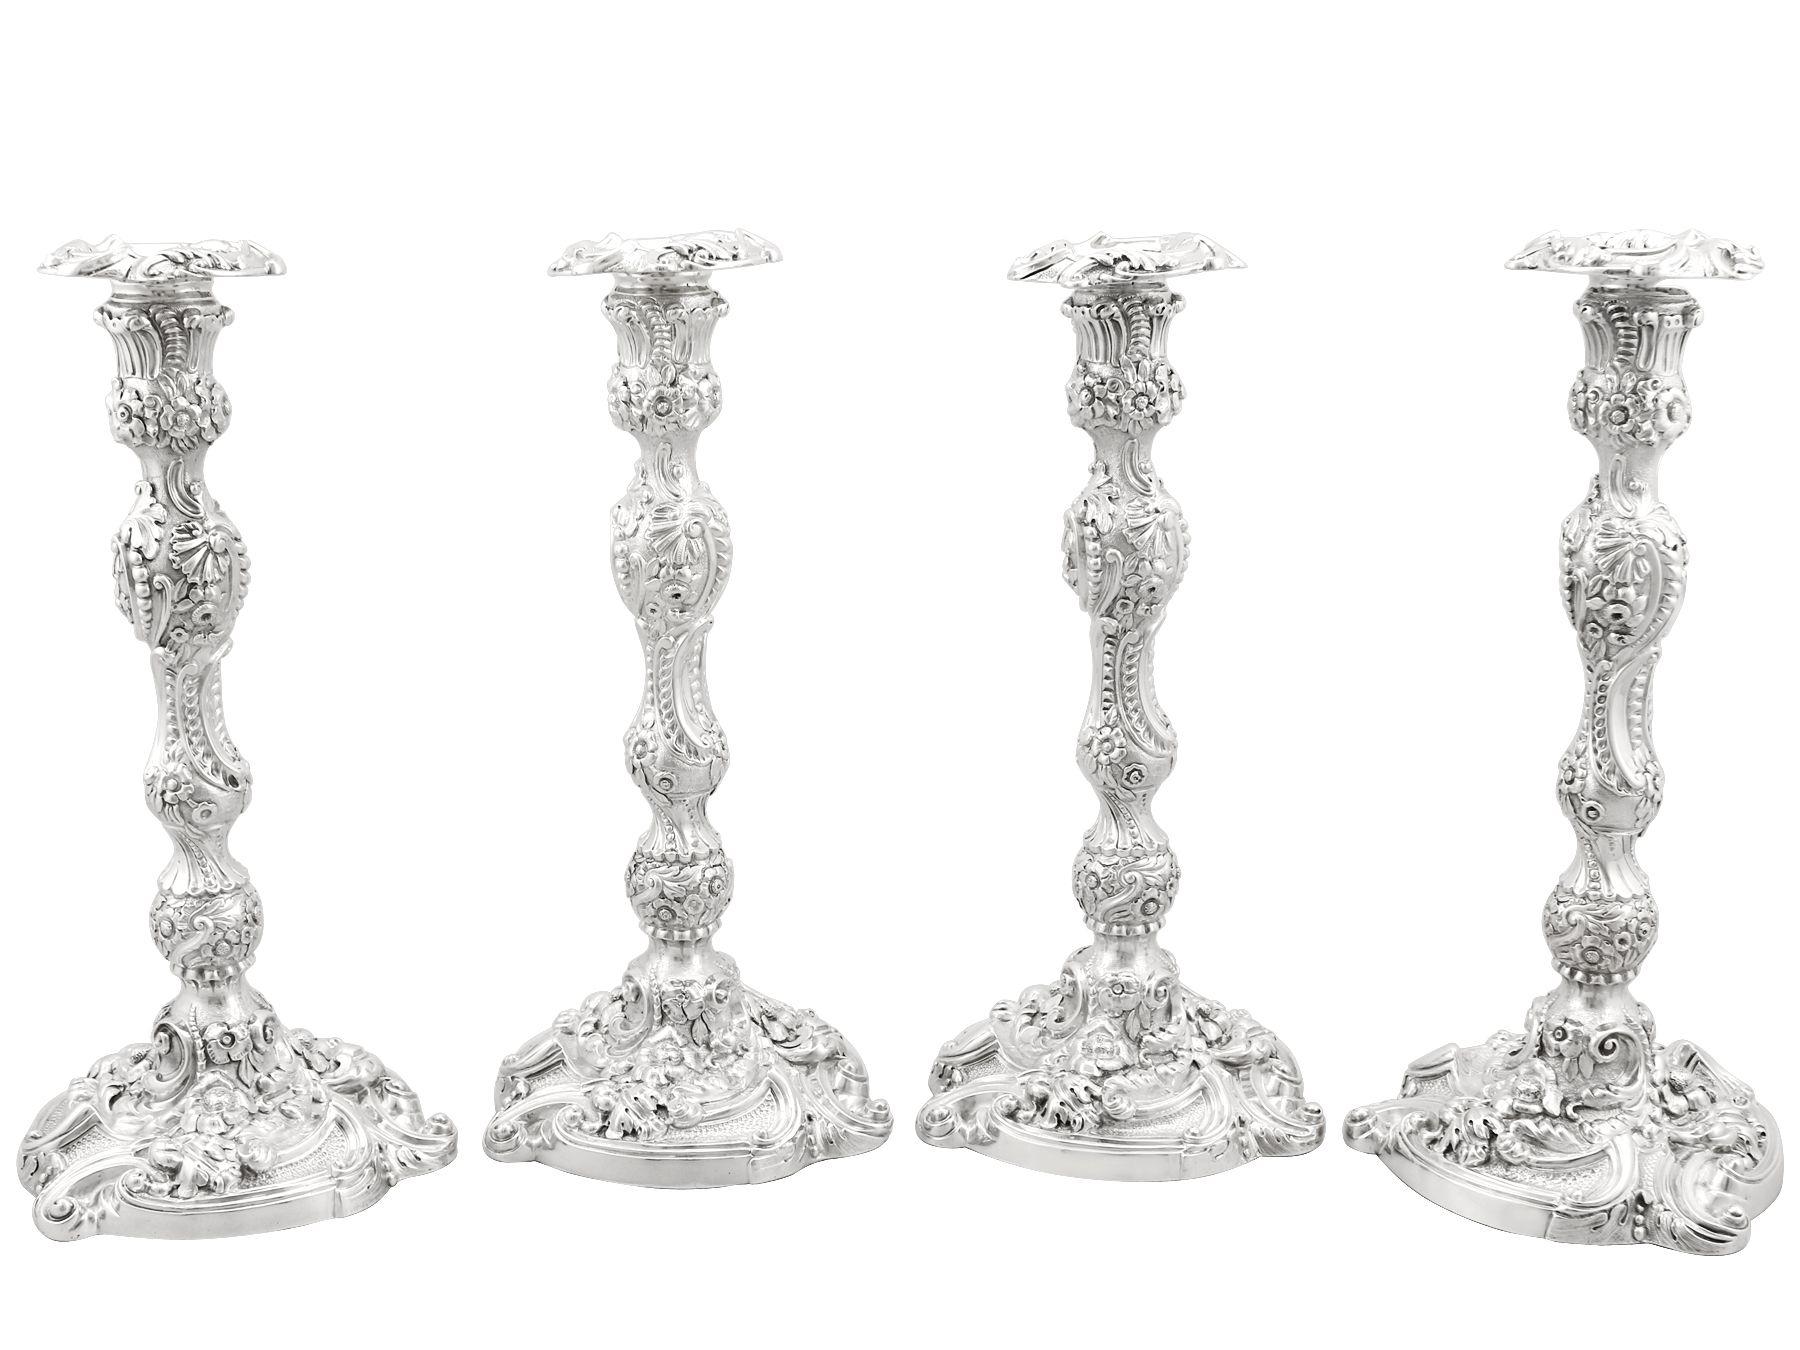 Un magnifique, fin et impressionnant ensemble de quatre chandeliers anciens en argent sterling George IV anglais ; un ajout à notre collection d'argenterie ancienne.

Ces magnifiques chandeliers anciens en argent sterling coulé de George IV ont